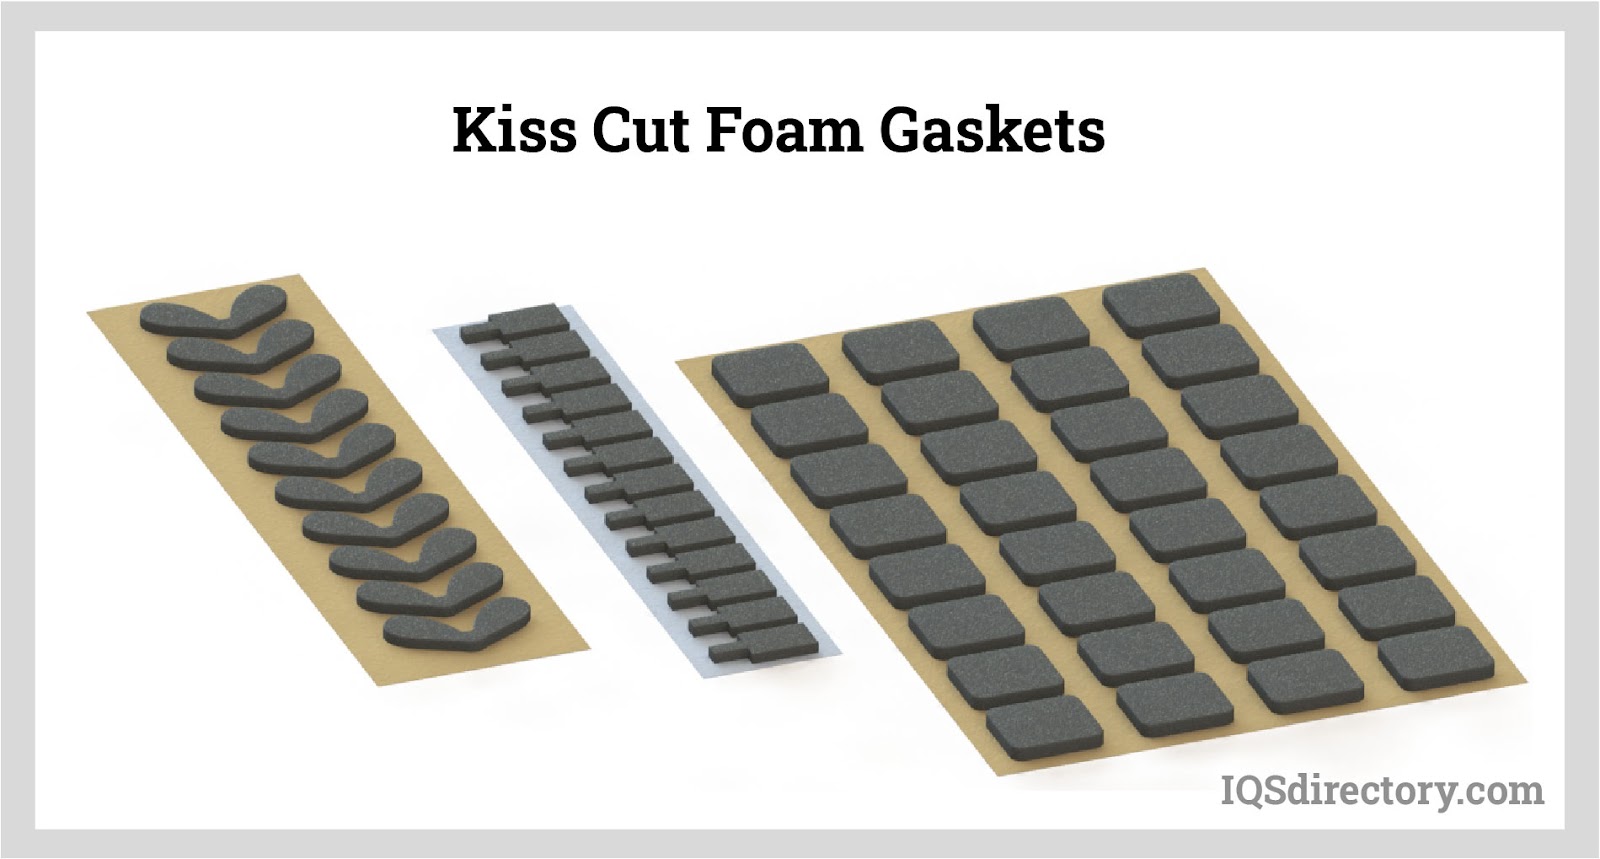 Kiss Cut Foam Gaskets